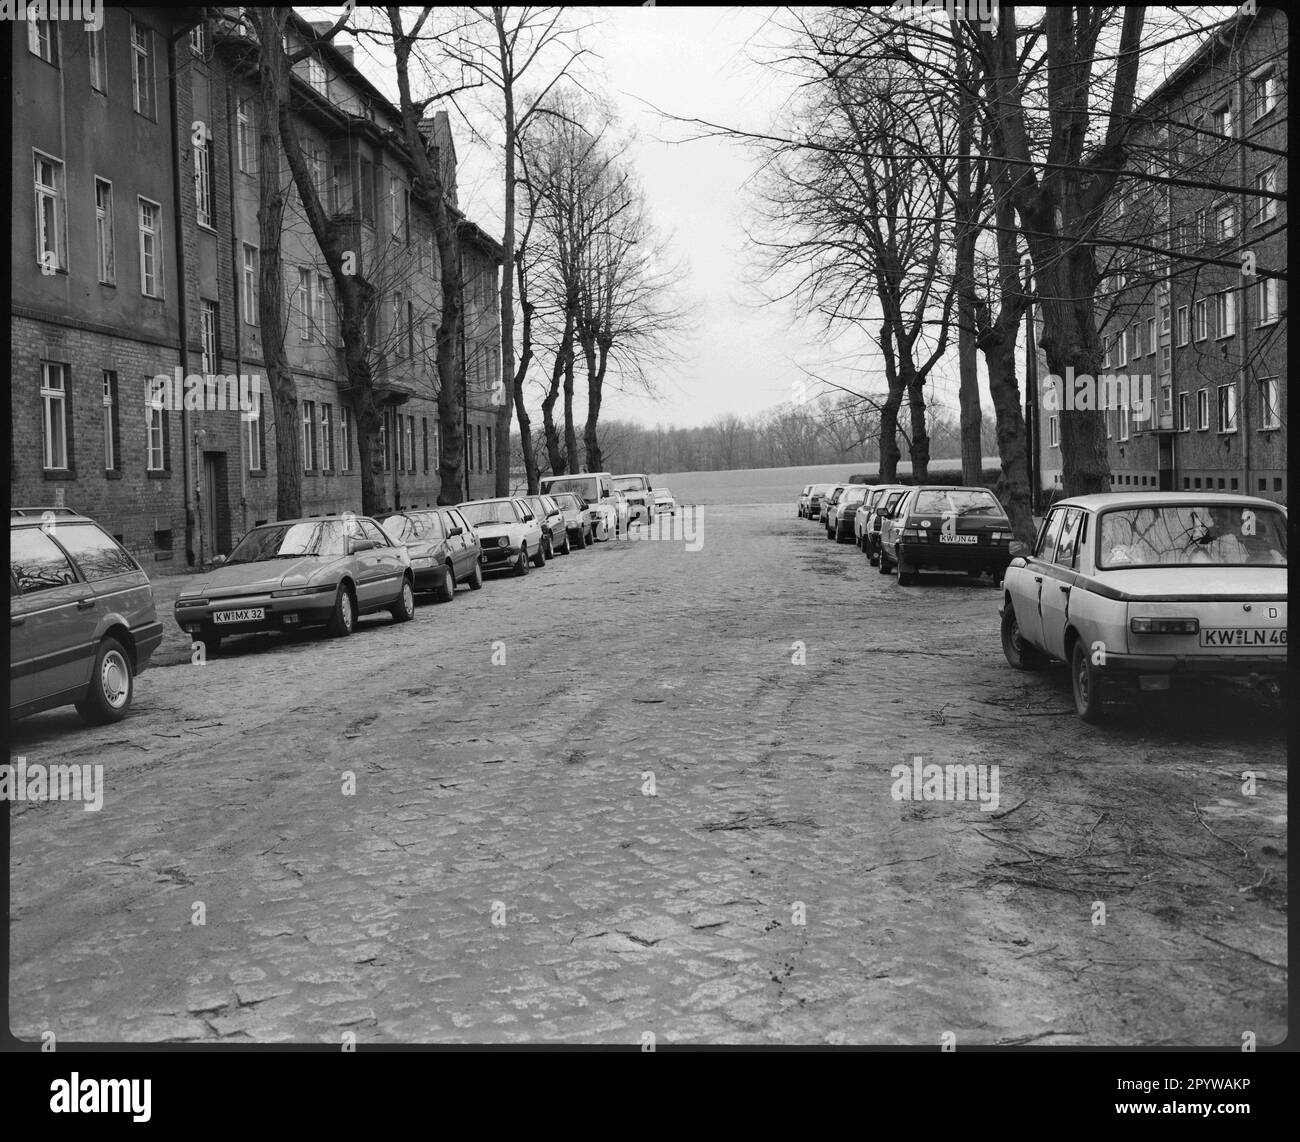 Strada con auto parcheggiate, alberi e case in inverno. Wildau, distretto di Dahme-Spreewald, Brandeburgo. Foto, 1993. Foto Stock